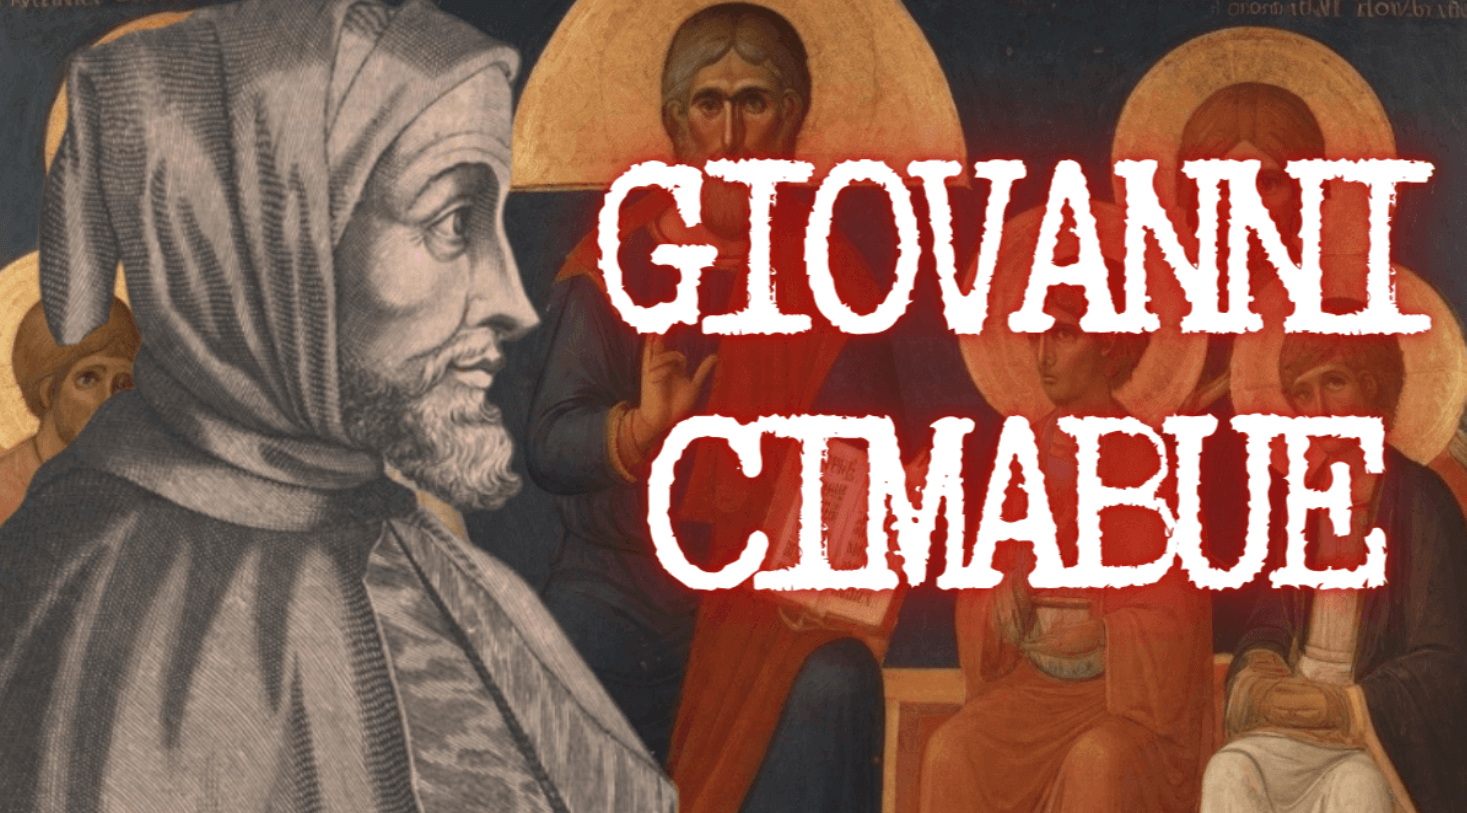 Giovanni Cimabue